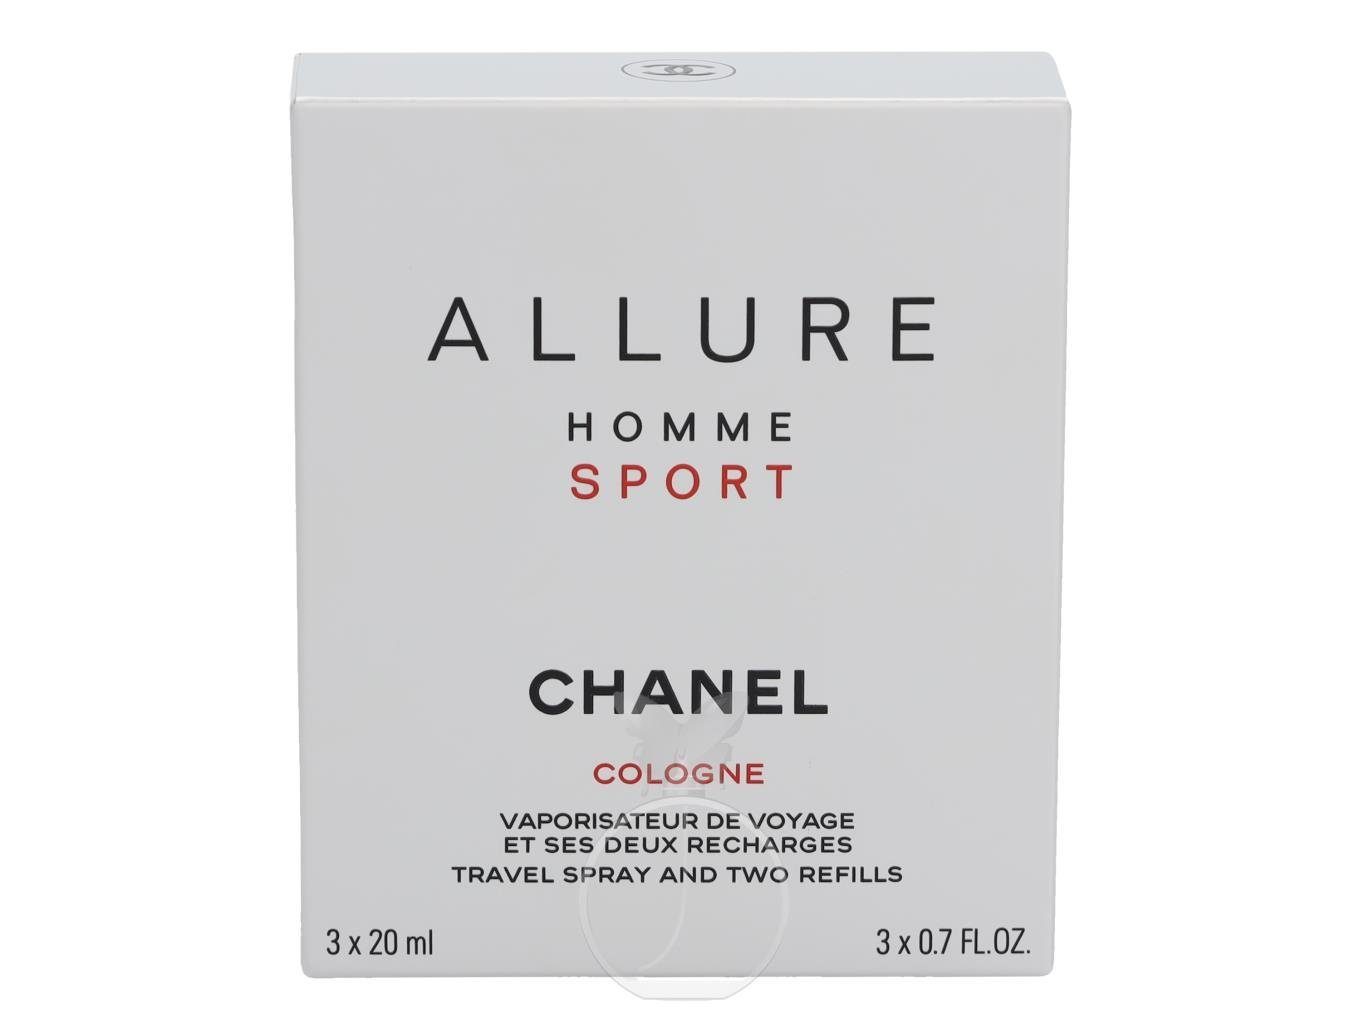 Allure Eau mit Homme Chanel Sport x de 20 Eau Zerstäuber Cologne ml 3 Cologne CHANEL de